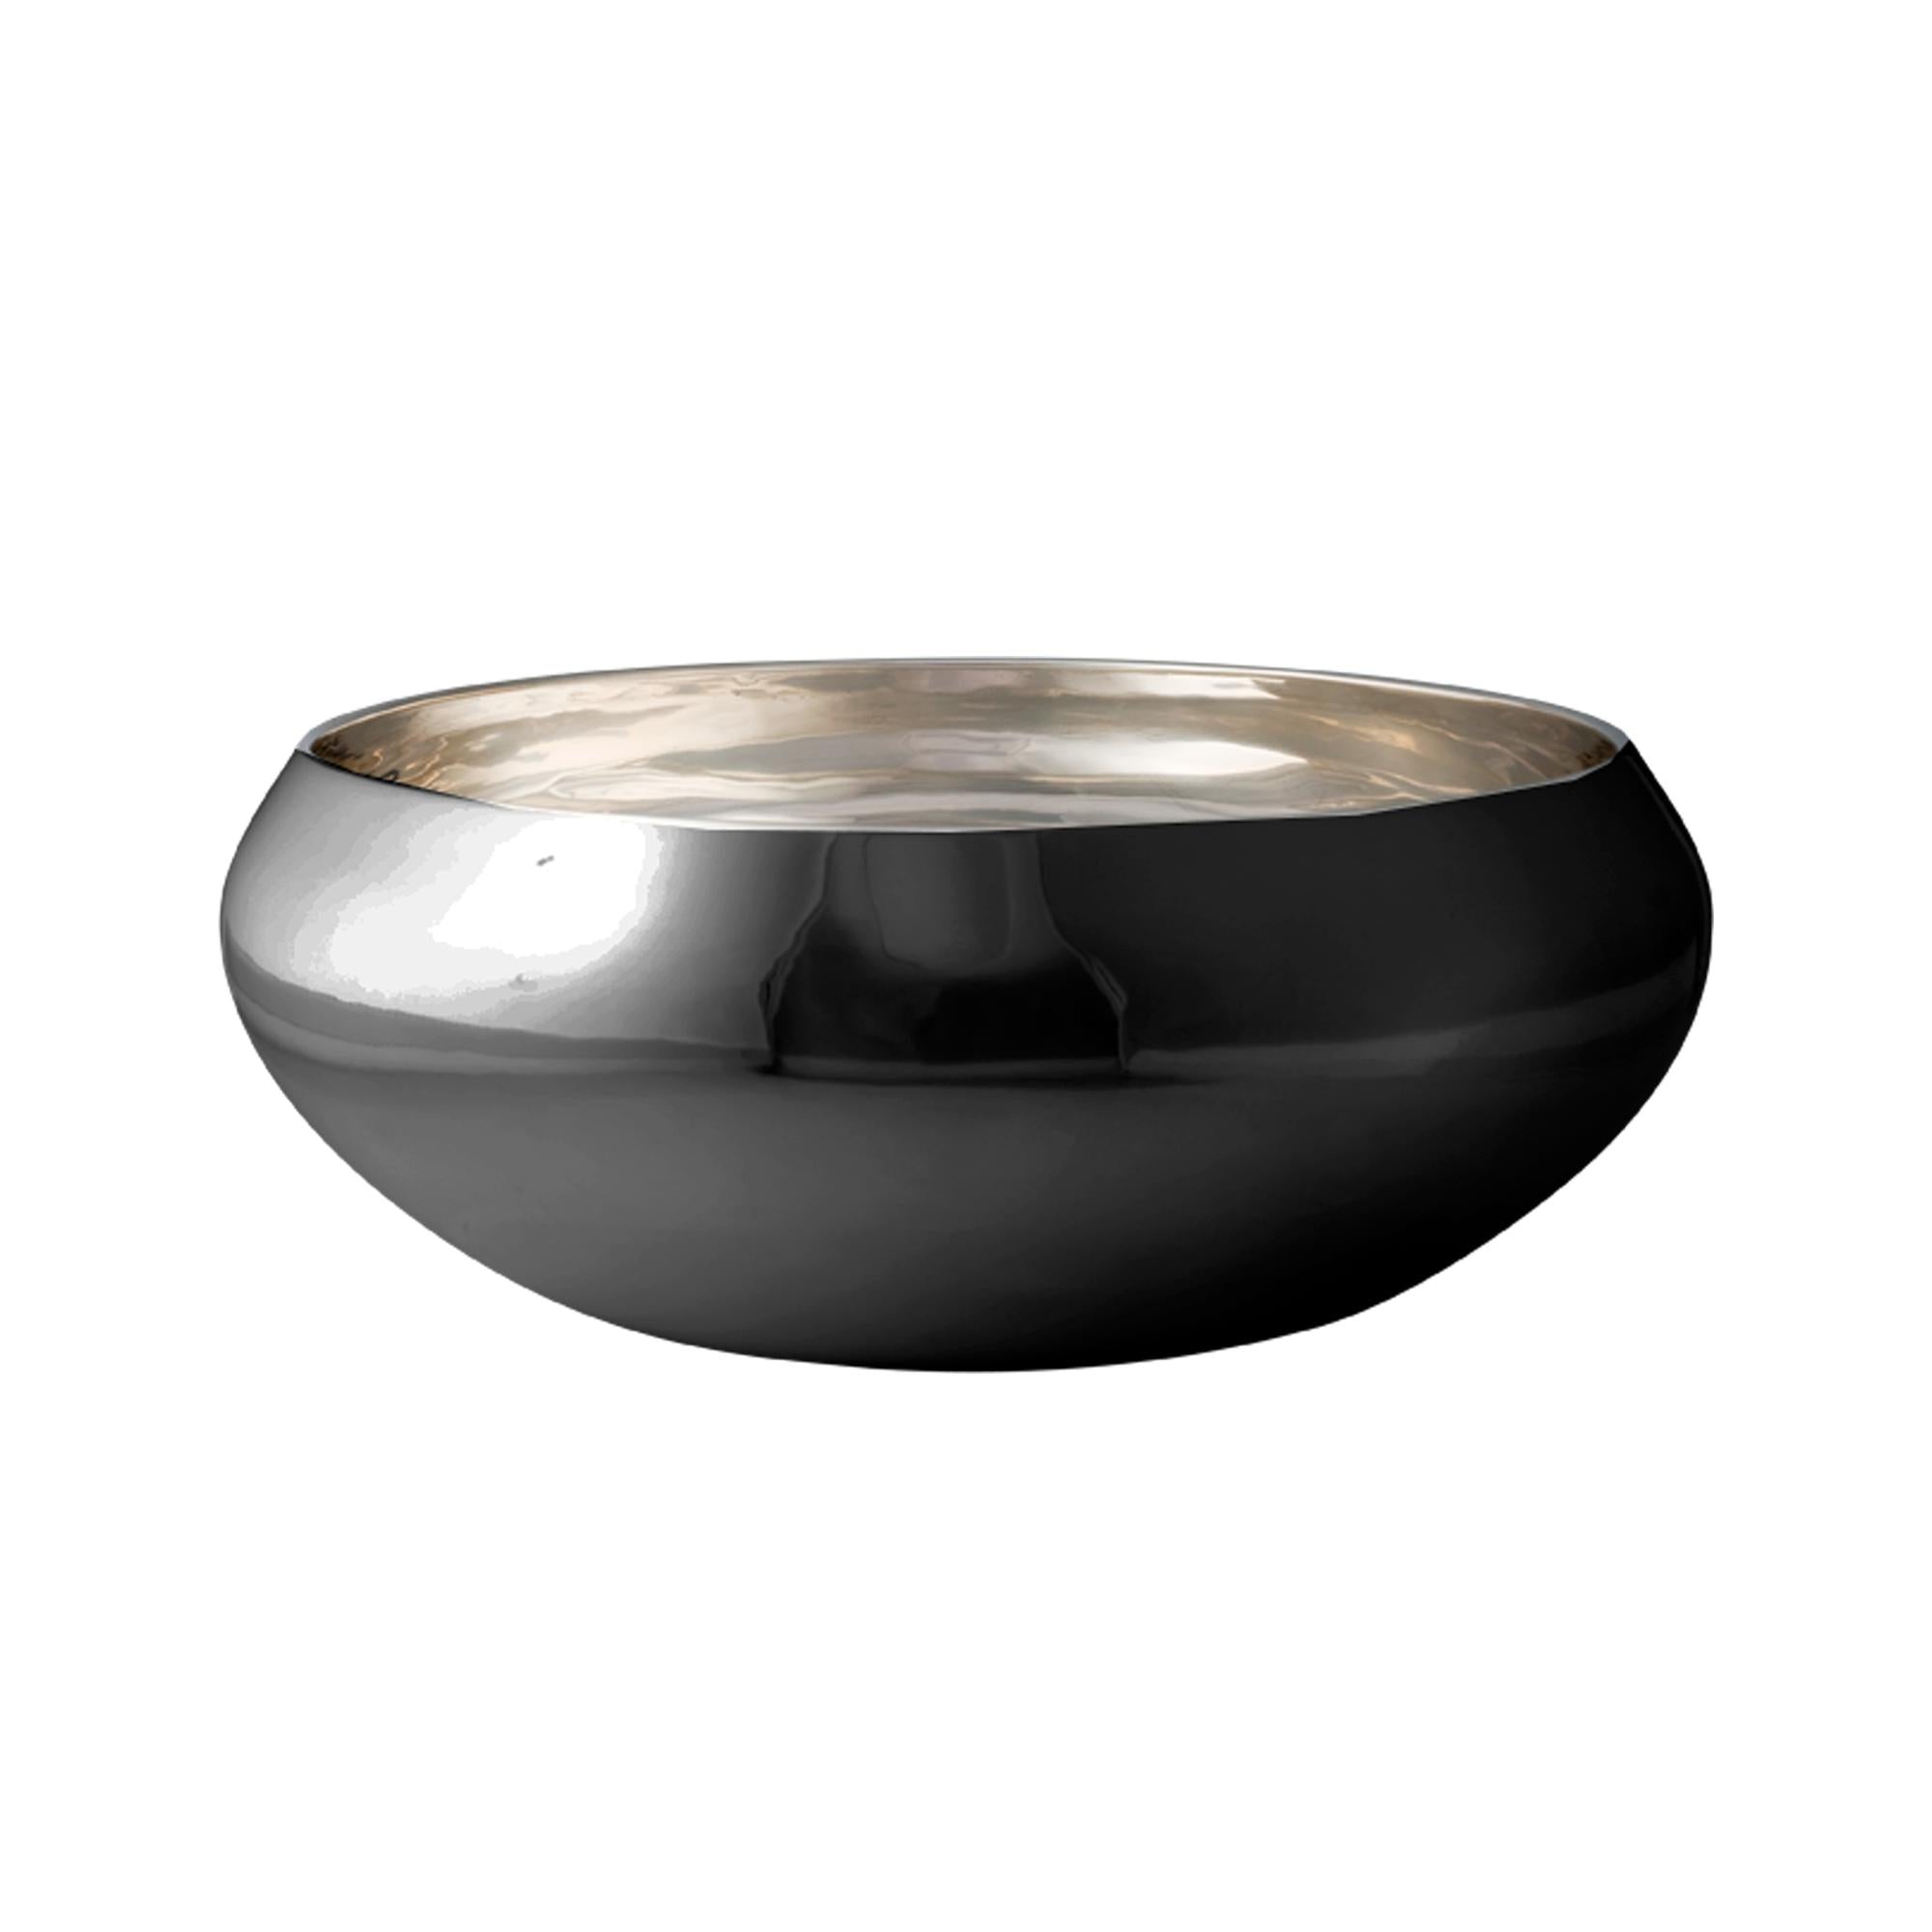 Kay Bojesen Nest Bowl Made Of Black Steel, Small